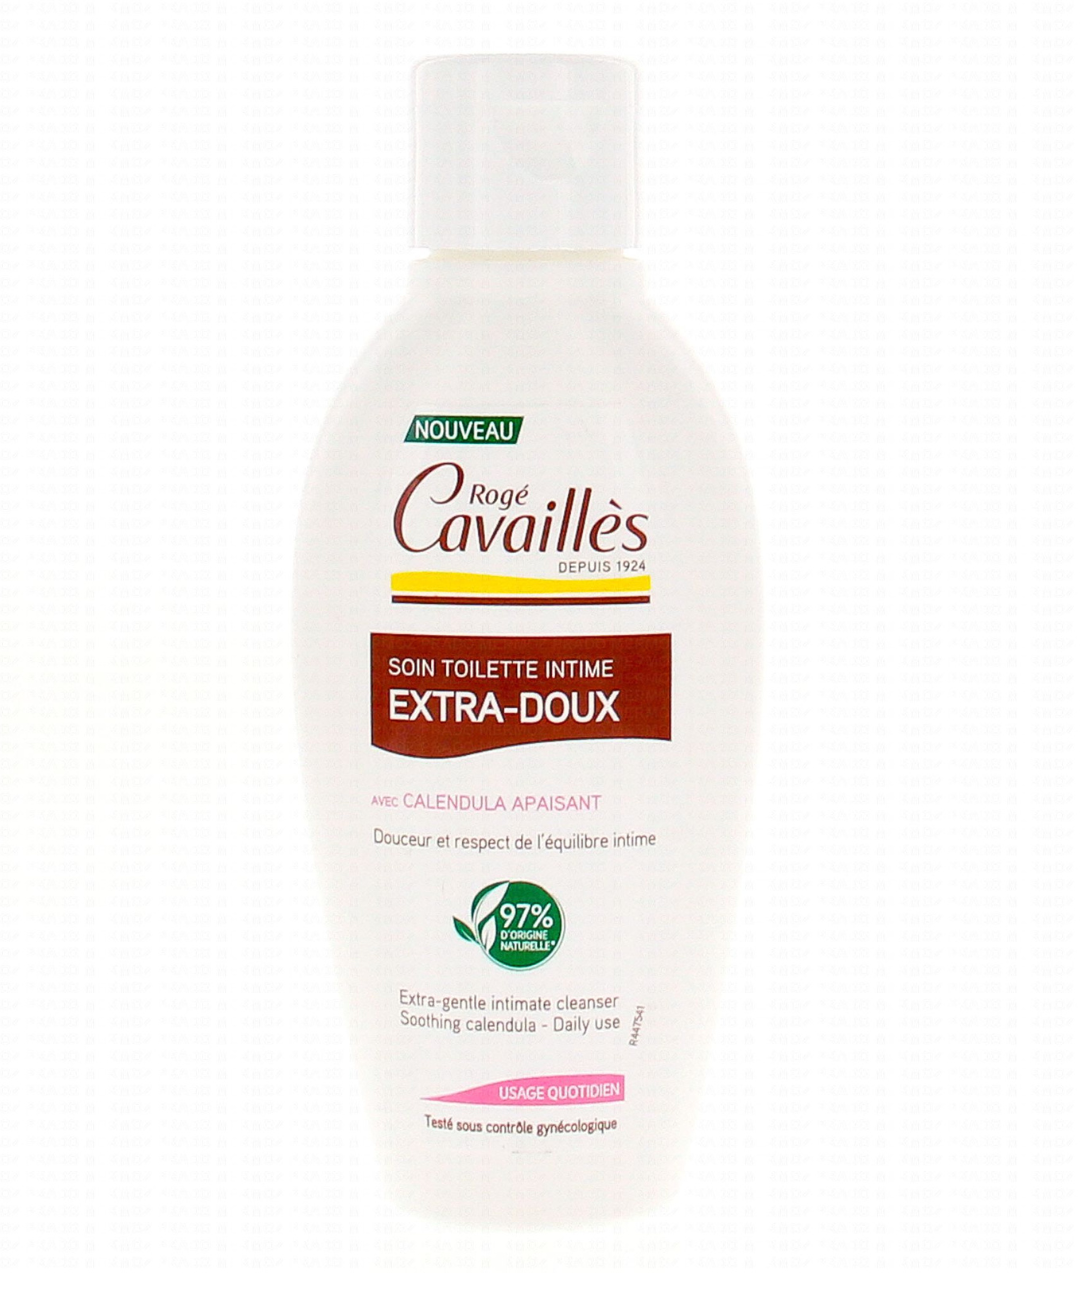 puressentiel shampooing quotidien poux doux bio -200ml - Para Casa